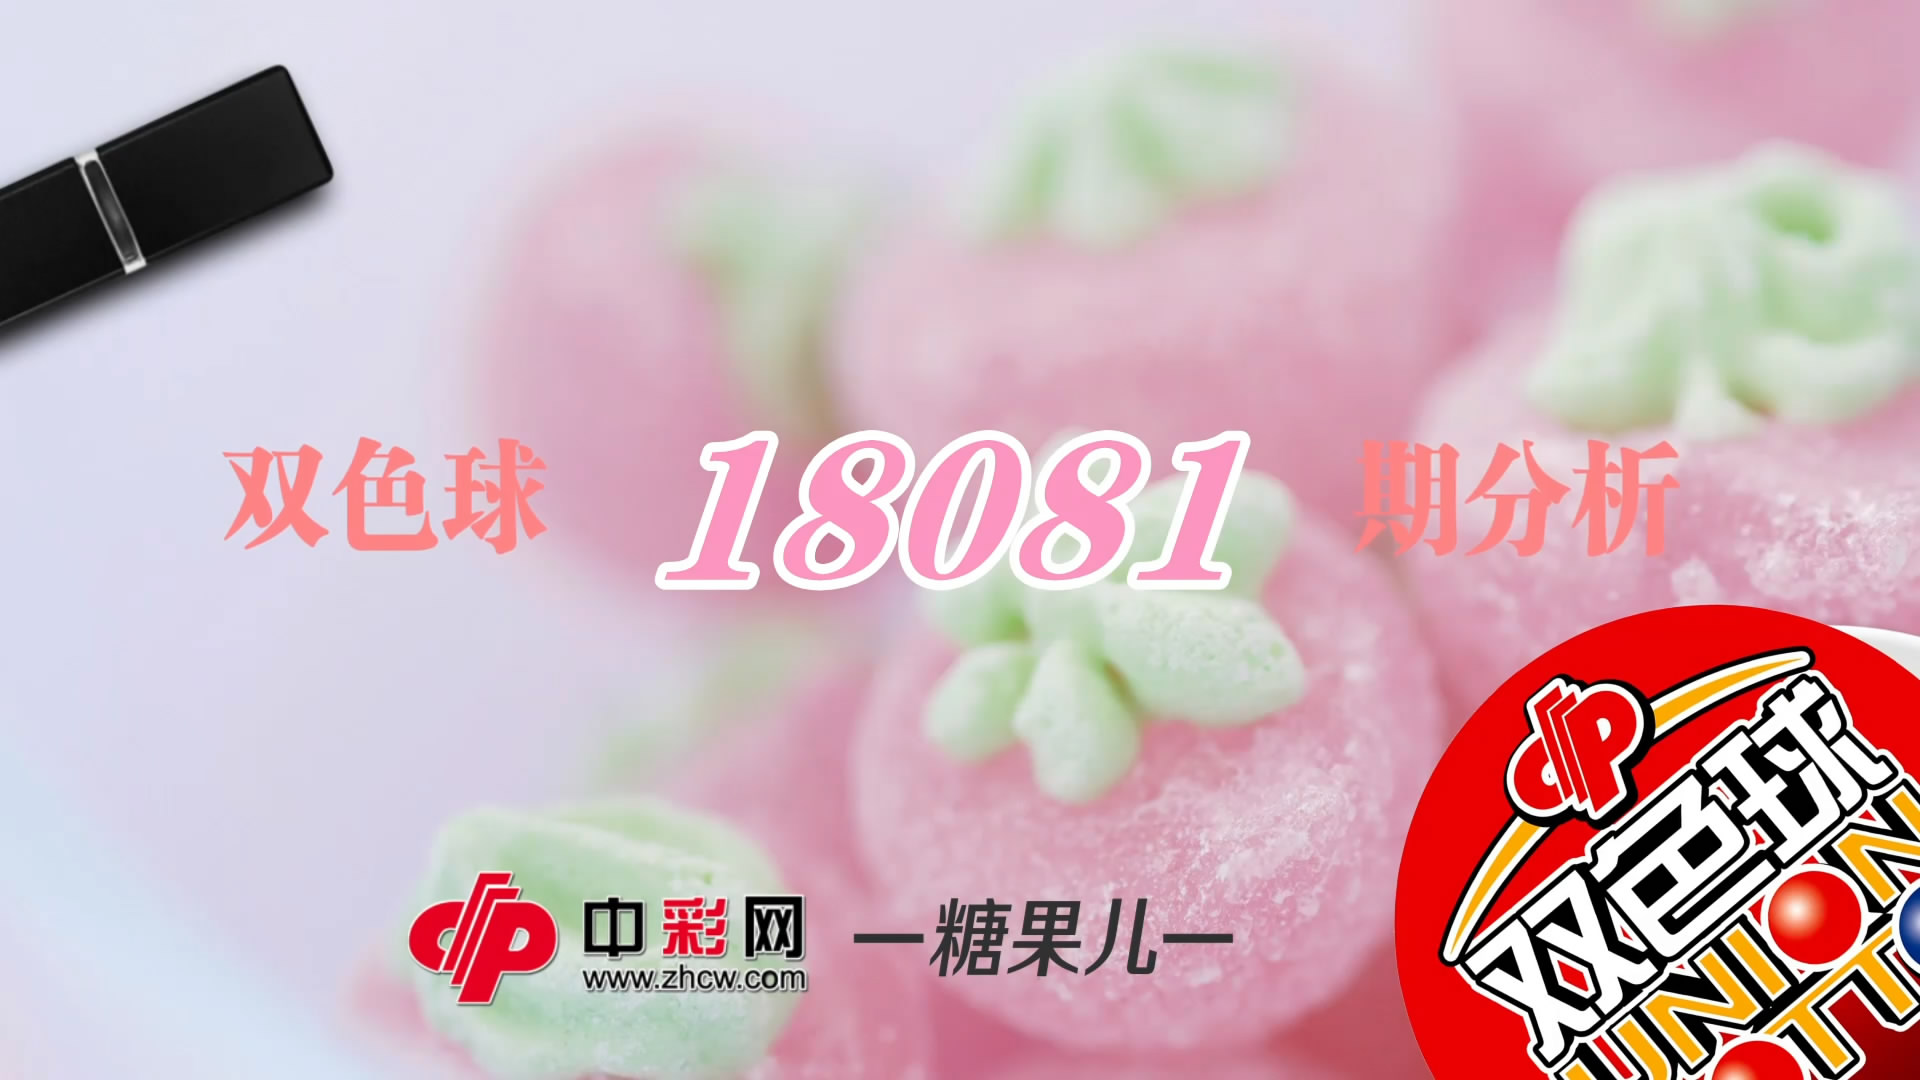 【中彩视频】糖果儿双色球第18081期